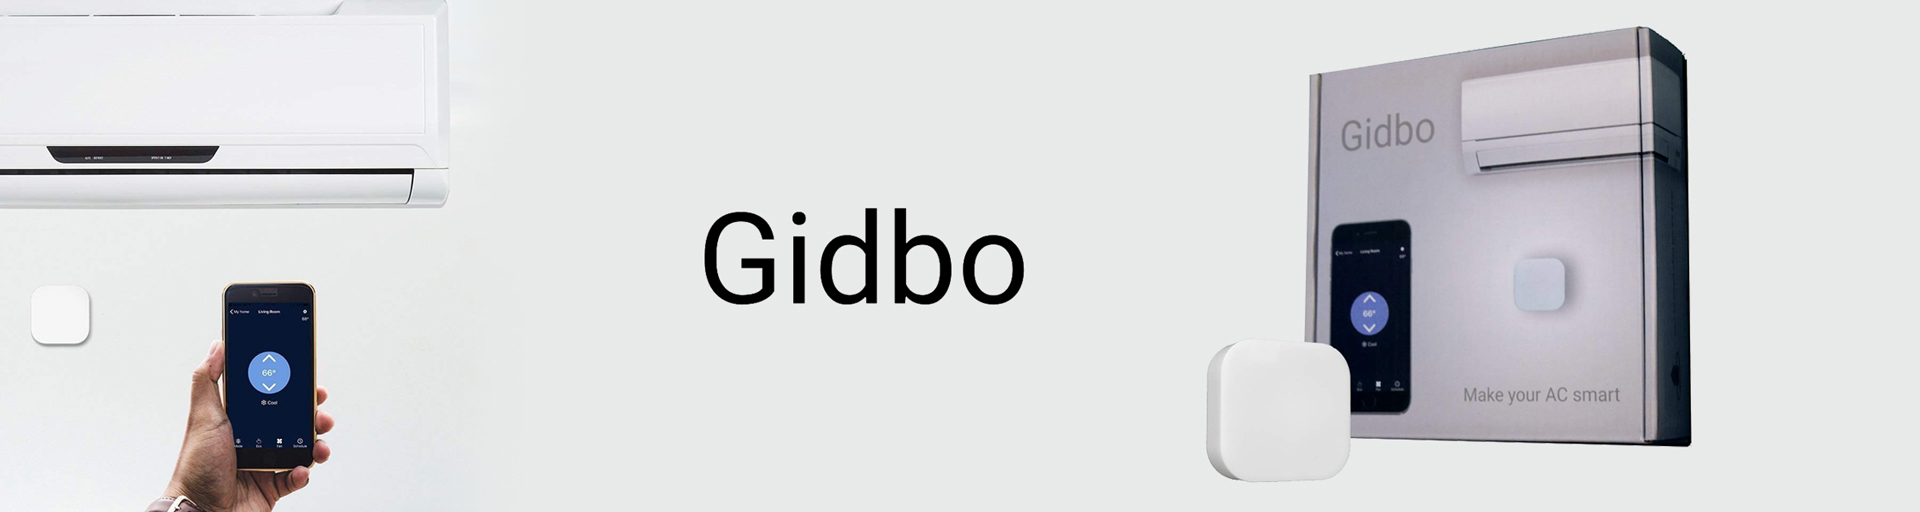 Gidbo